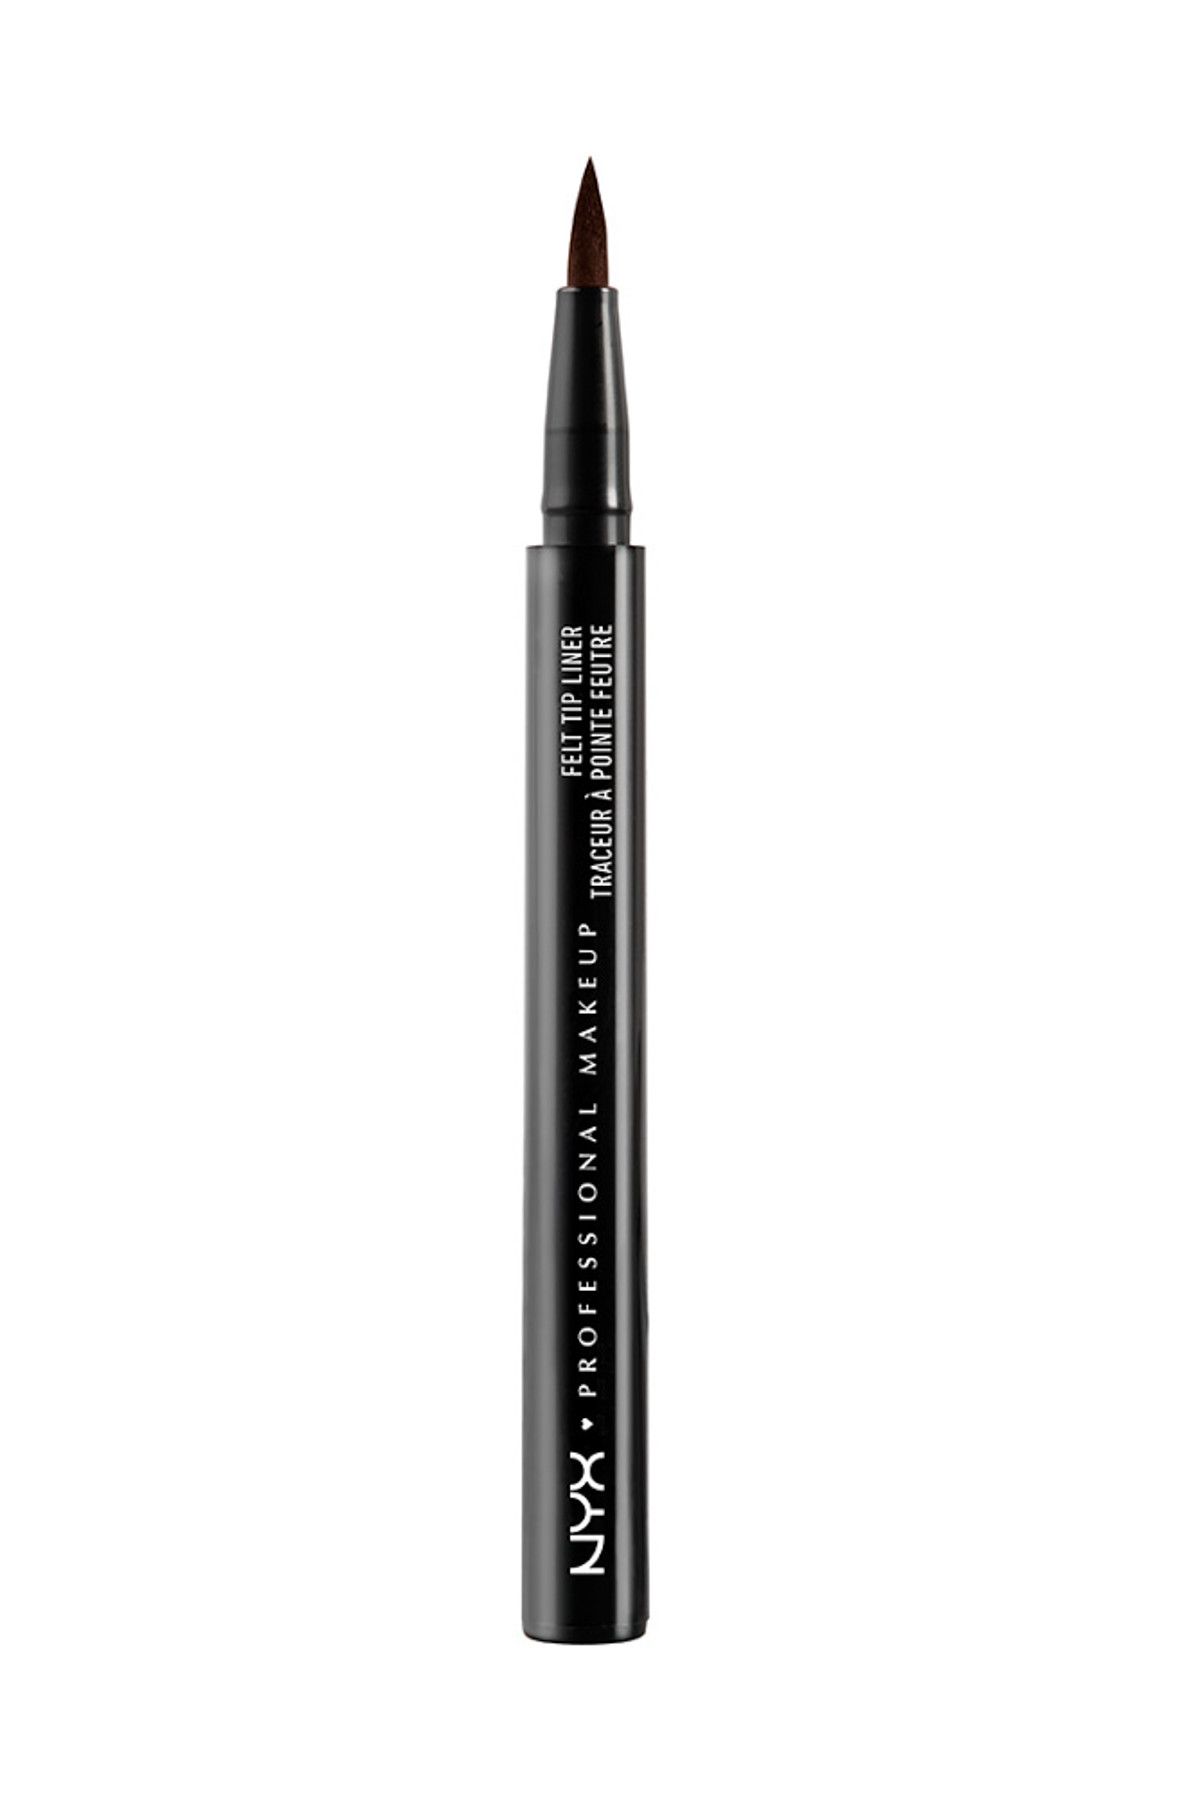 NYX Professional Makeup Koyu Kahverengi Keçe Uçlu Eyeliner - Felt Tip Liner Dark Brown 10 g 800897131036